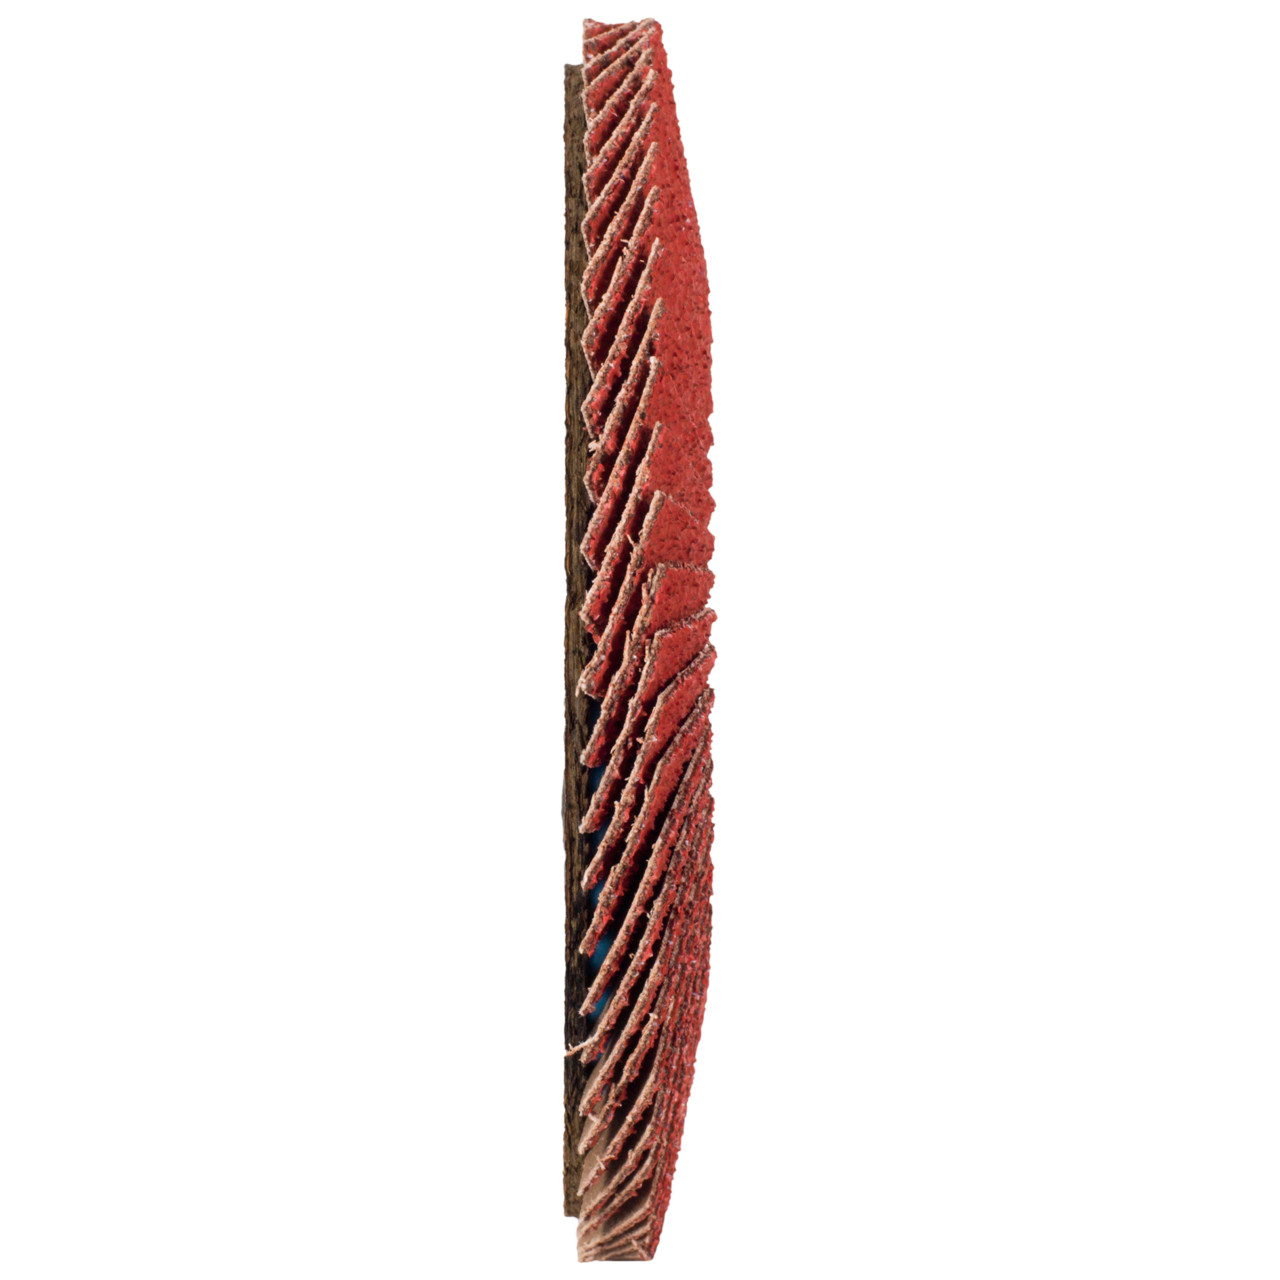 Tyrolit Gekartelde borgring DxH 125x22,23 CERABOND gekartelde borgring voor roestvrij staal, P60, vorm: 28A - rechte versie (glasvezeldragerhuisversie), Art. 34166176